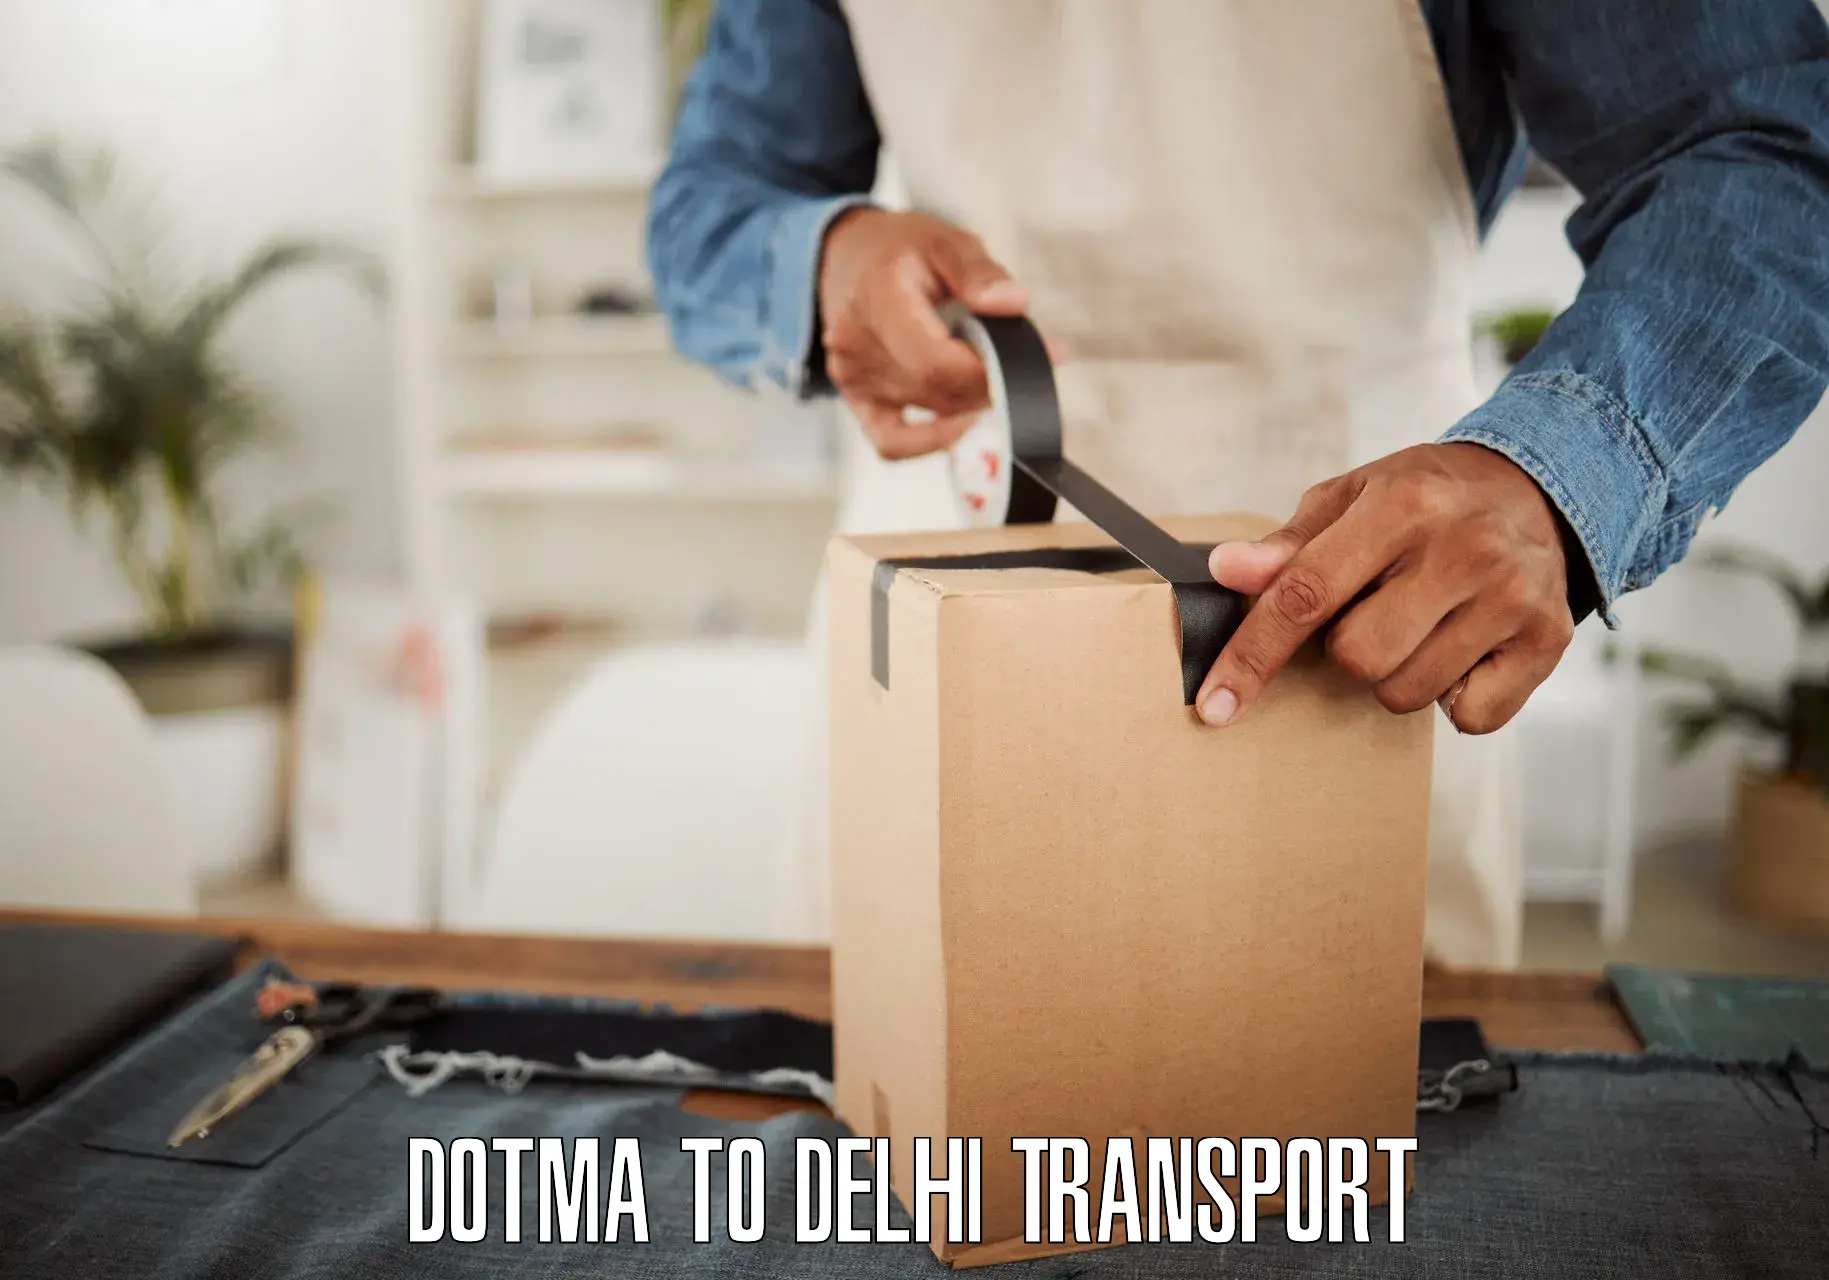 Best transport services in India Dotma to Kalkaji